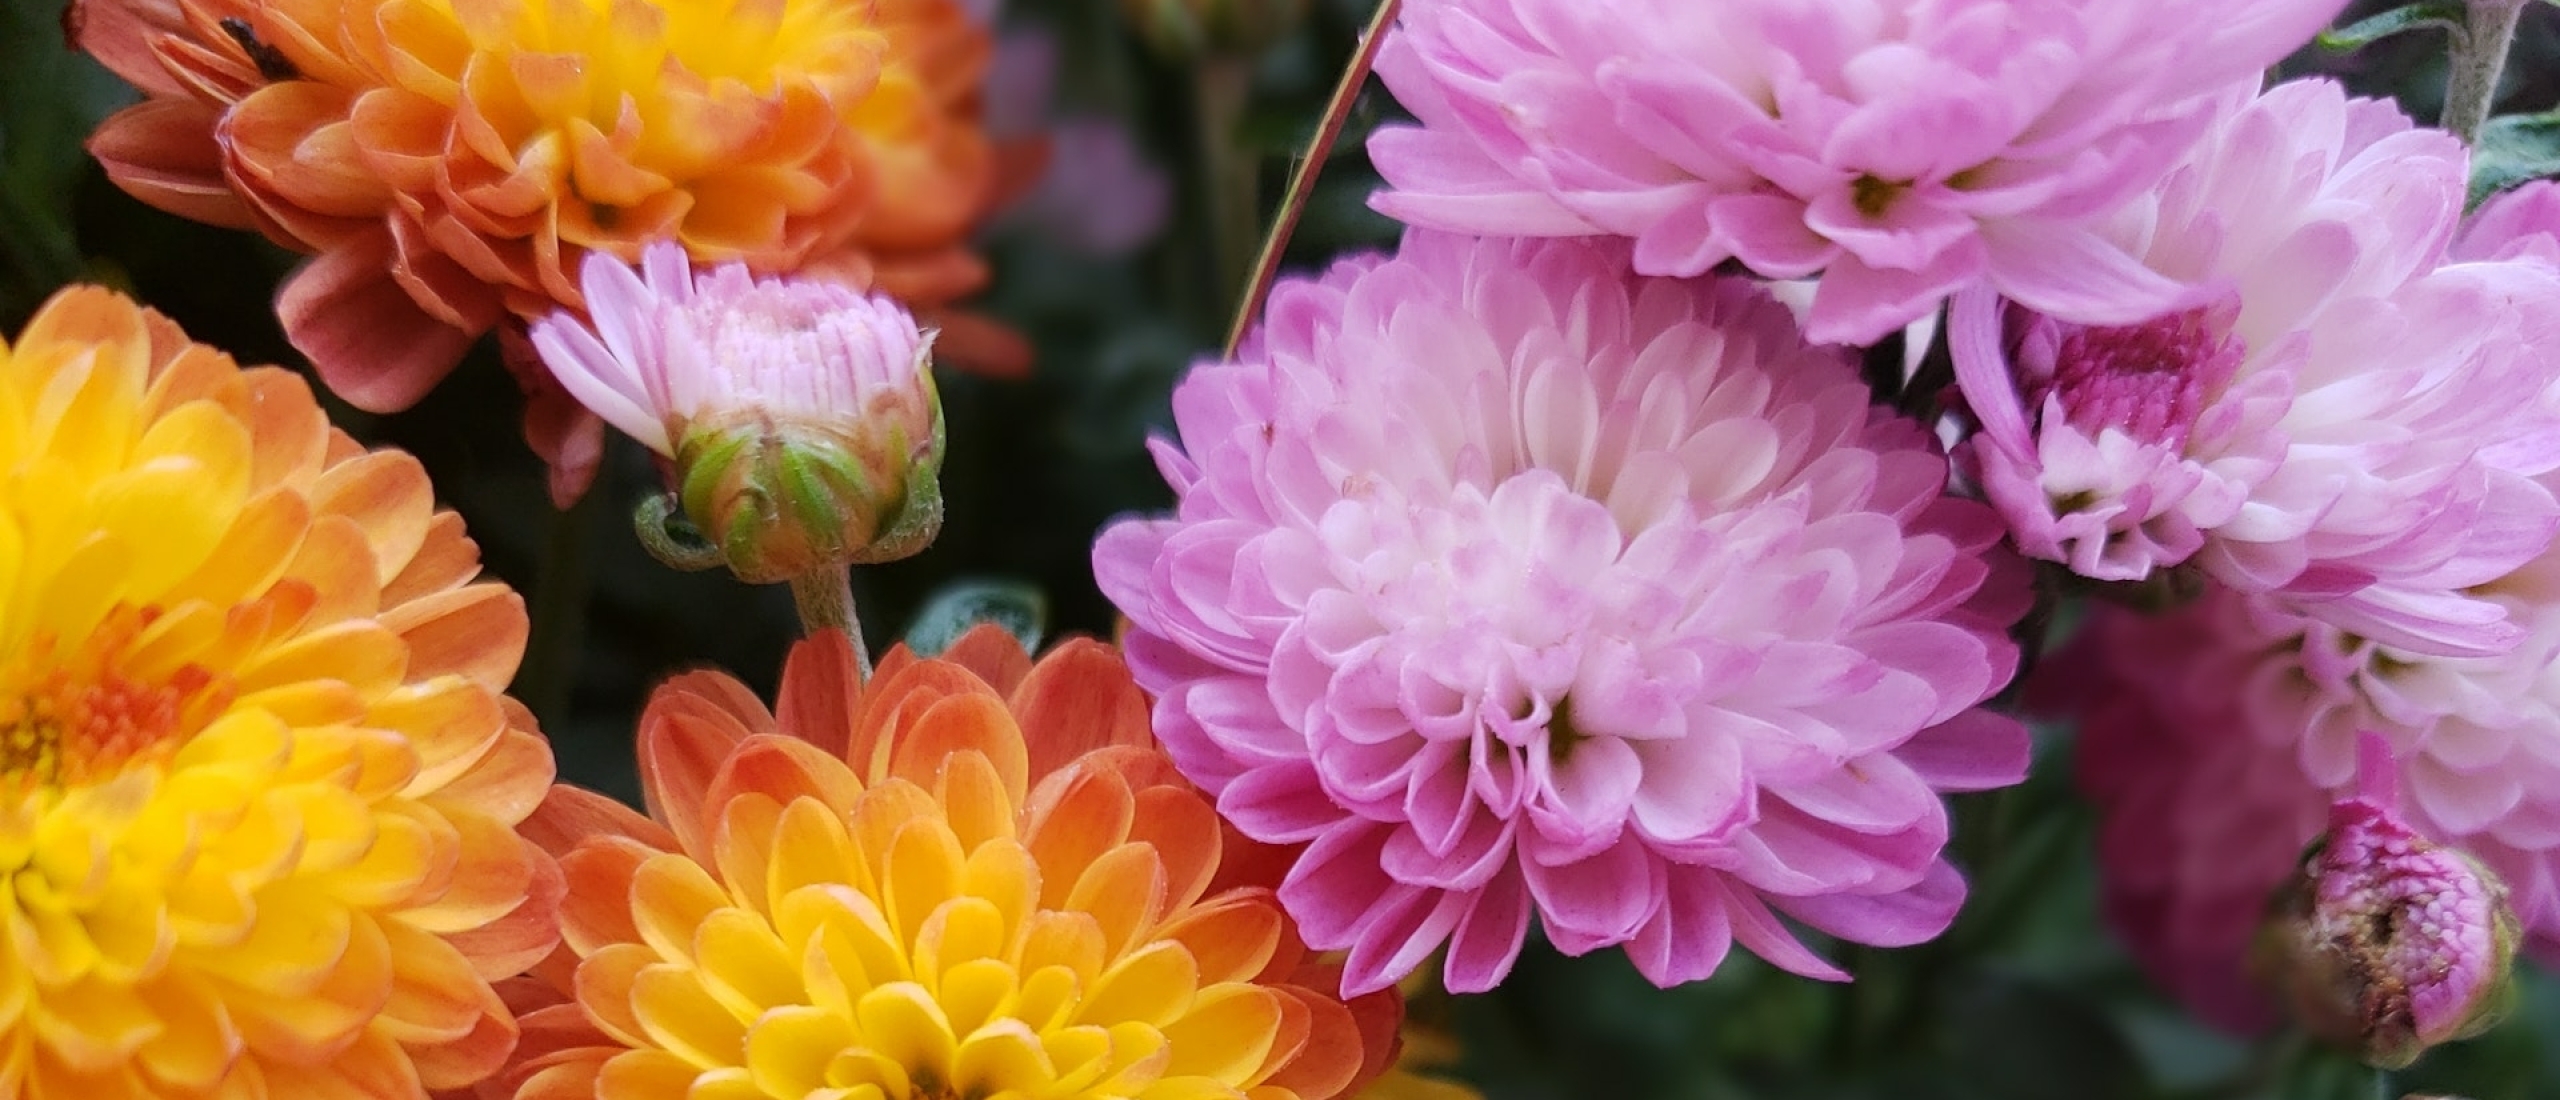 De Chrysant: een super veelzijdige bloem met flair